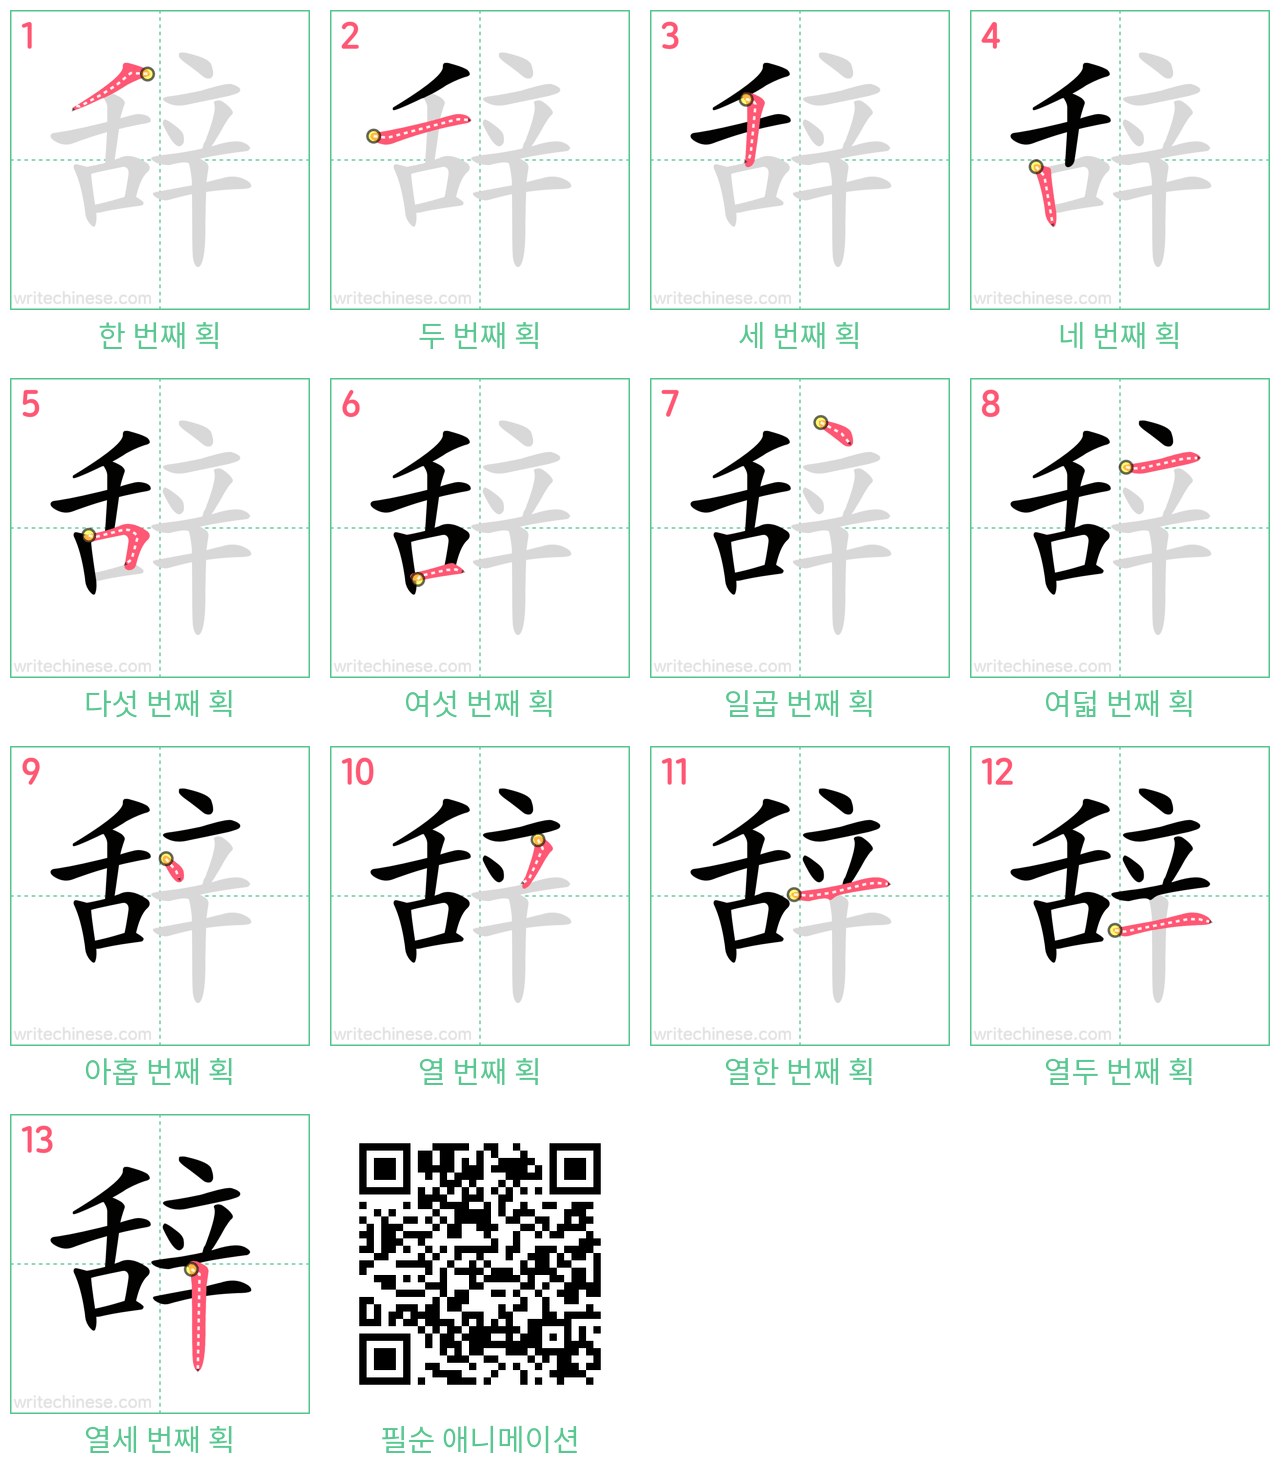 辞 step-by-step stroke order diagrams